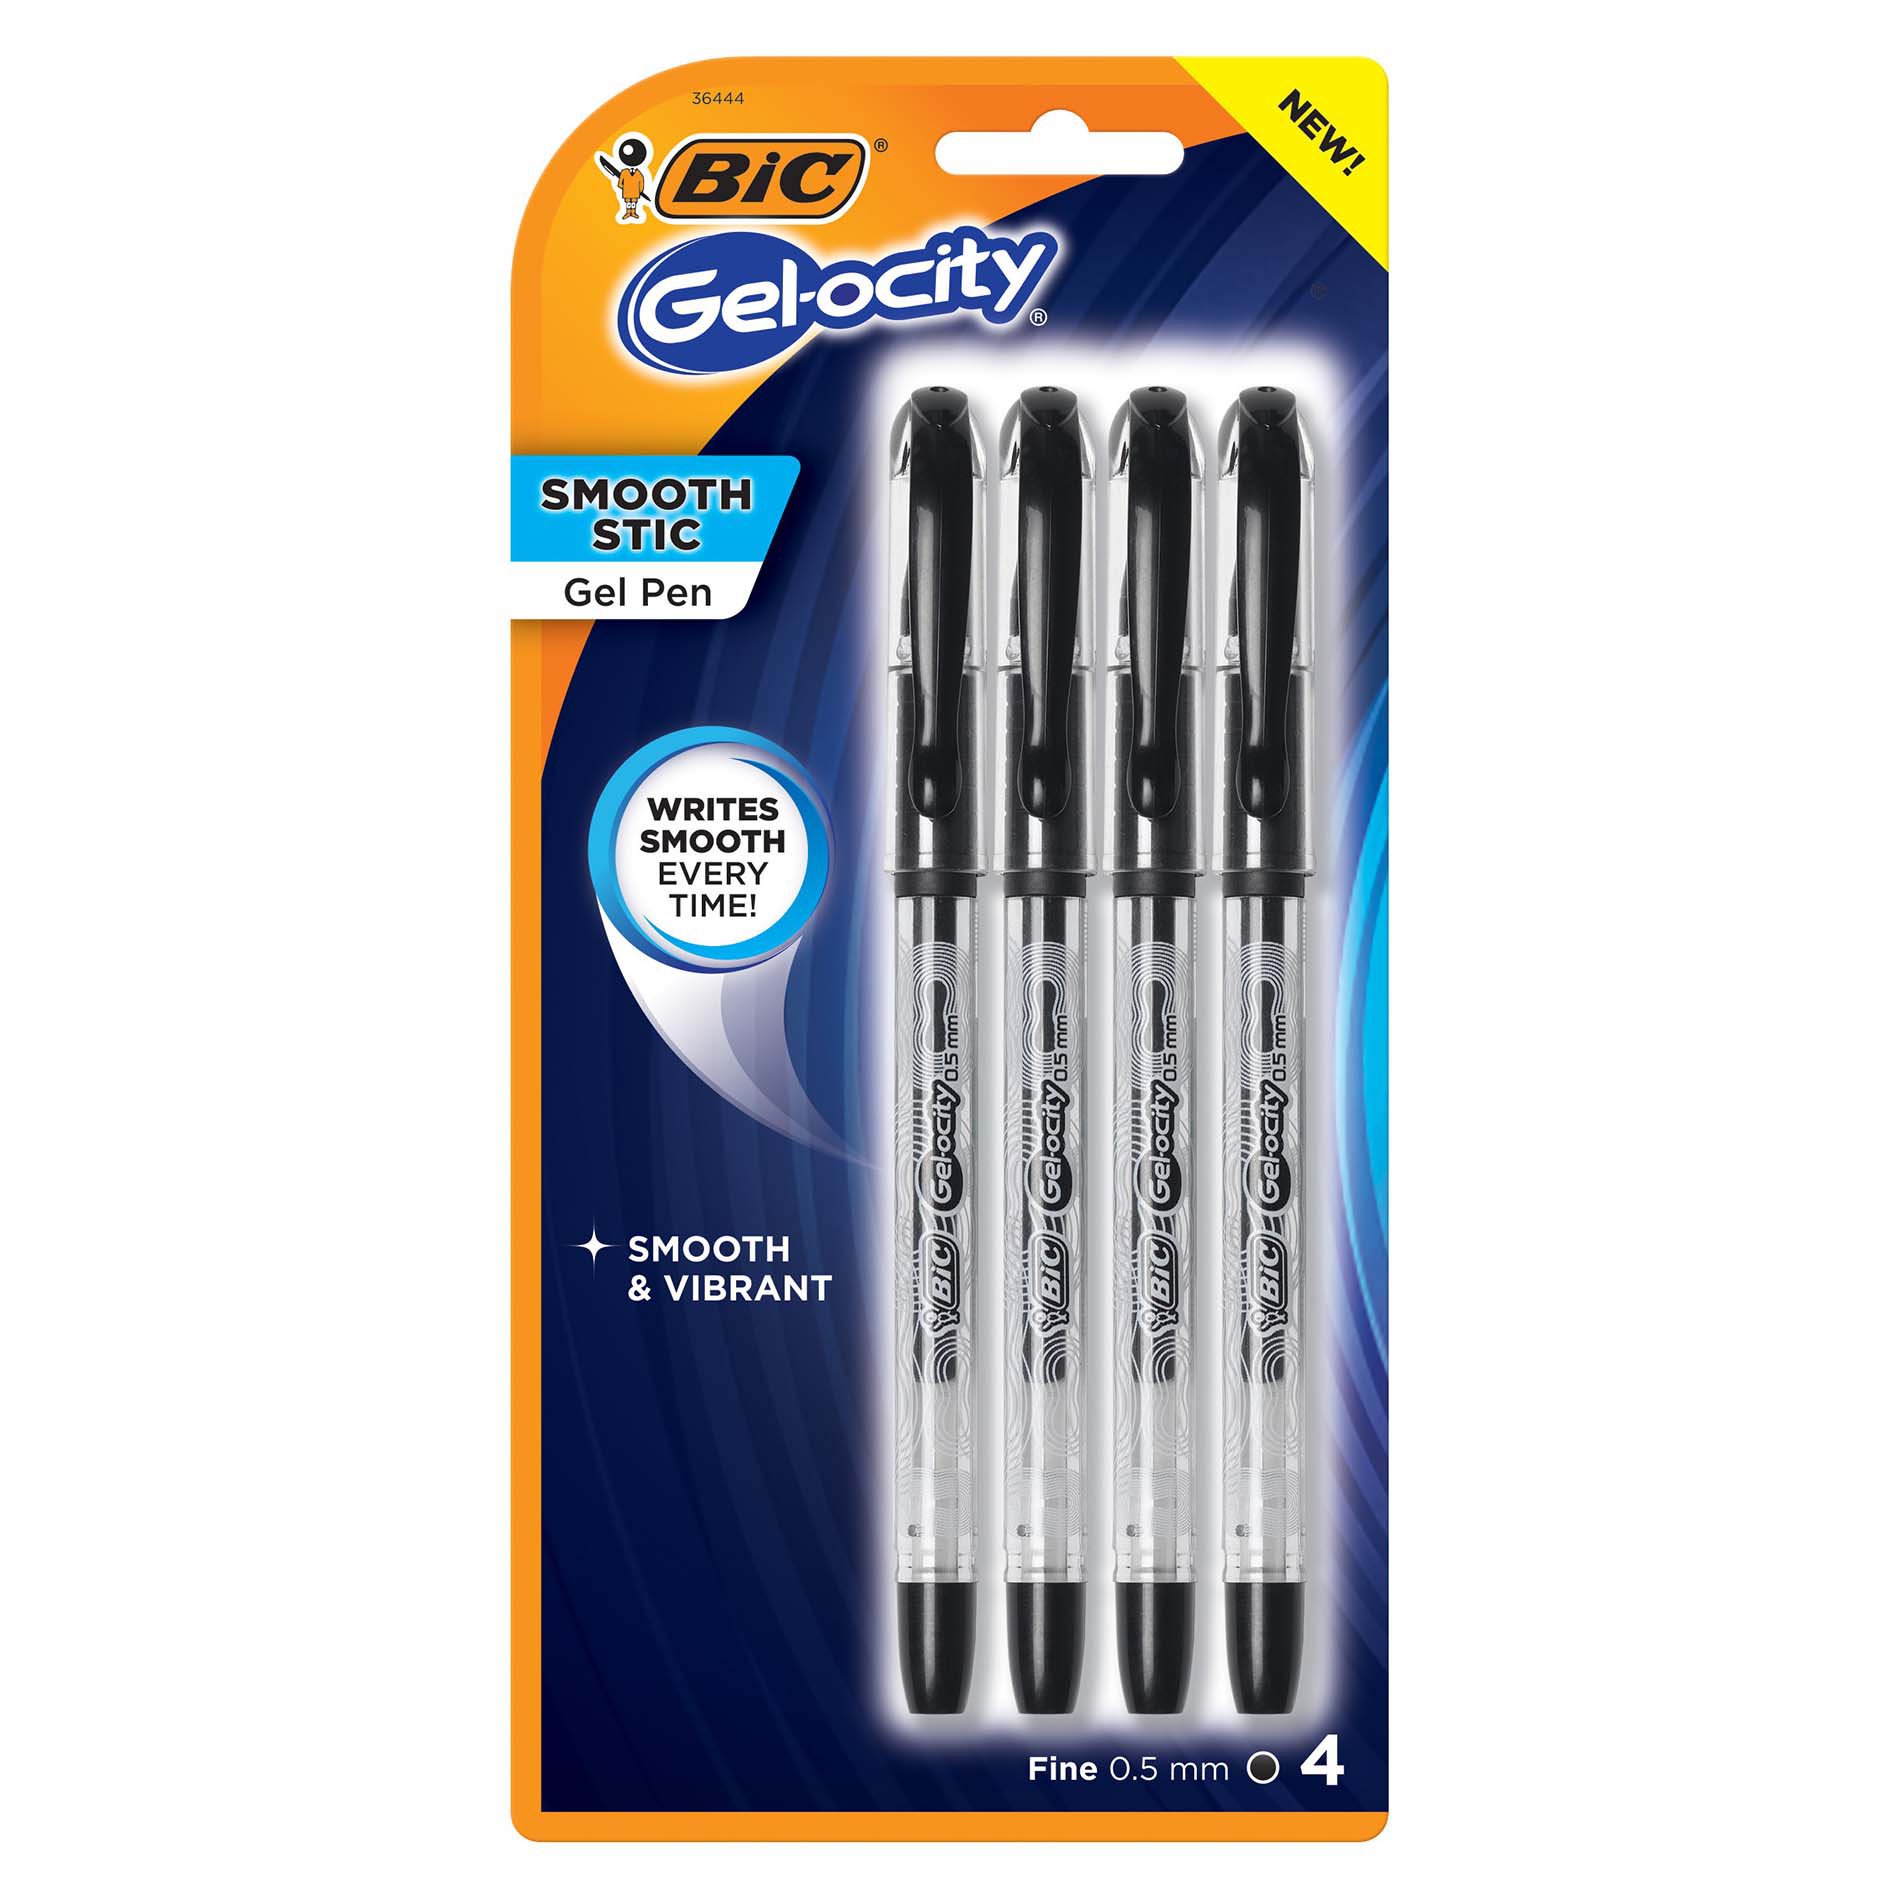 BIC Gel-ocity Smooth Stic 0.5mm Gel Pens - Black Ink